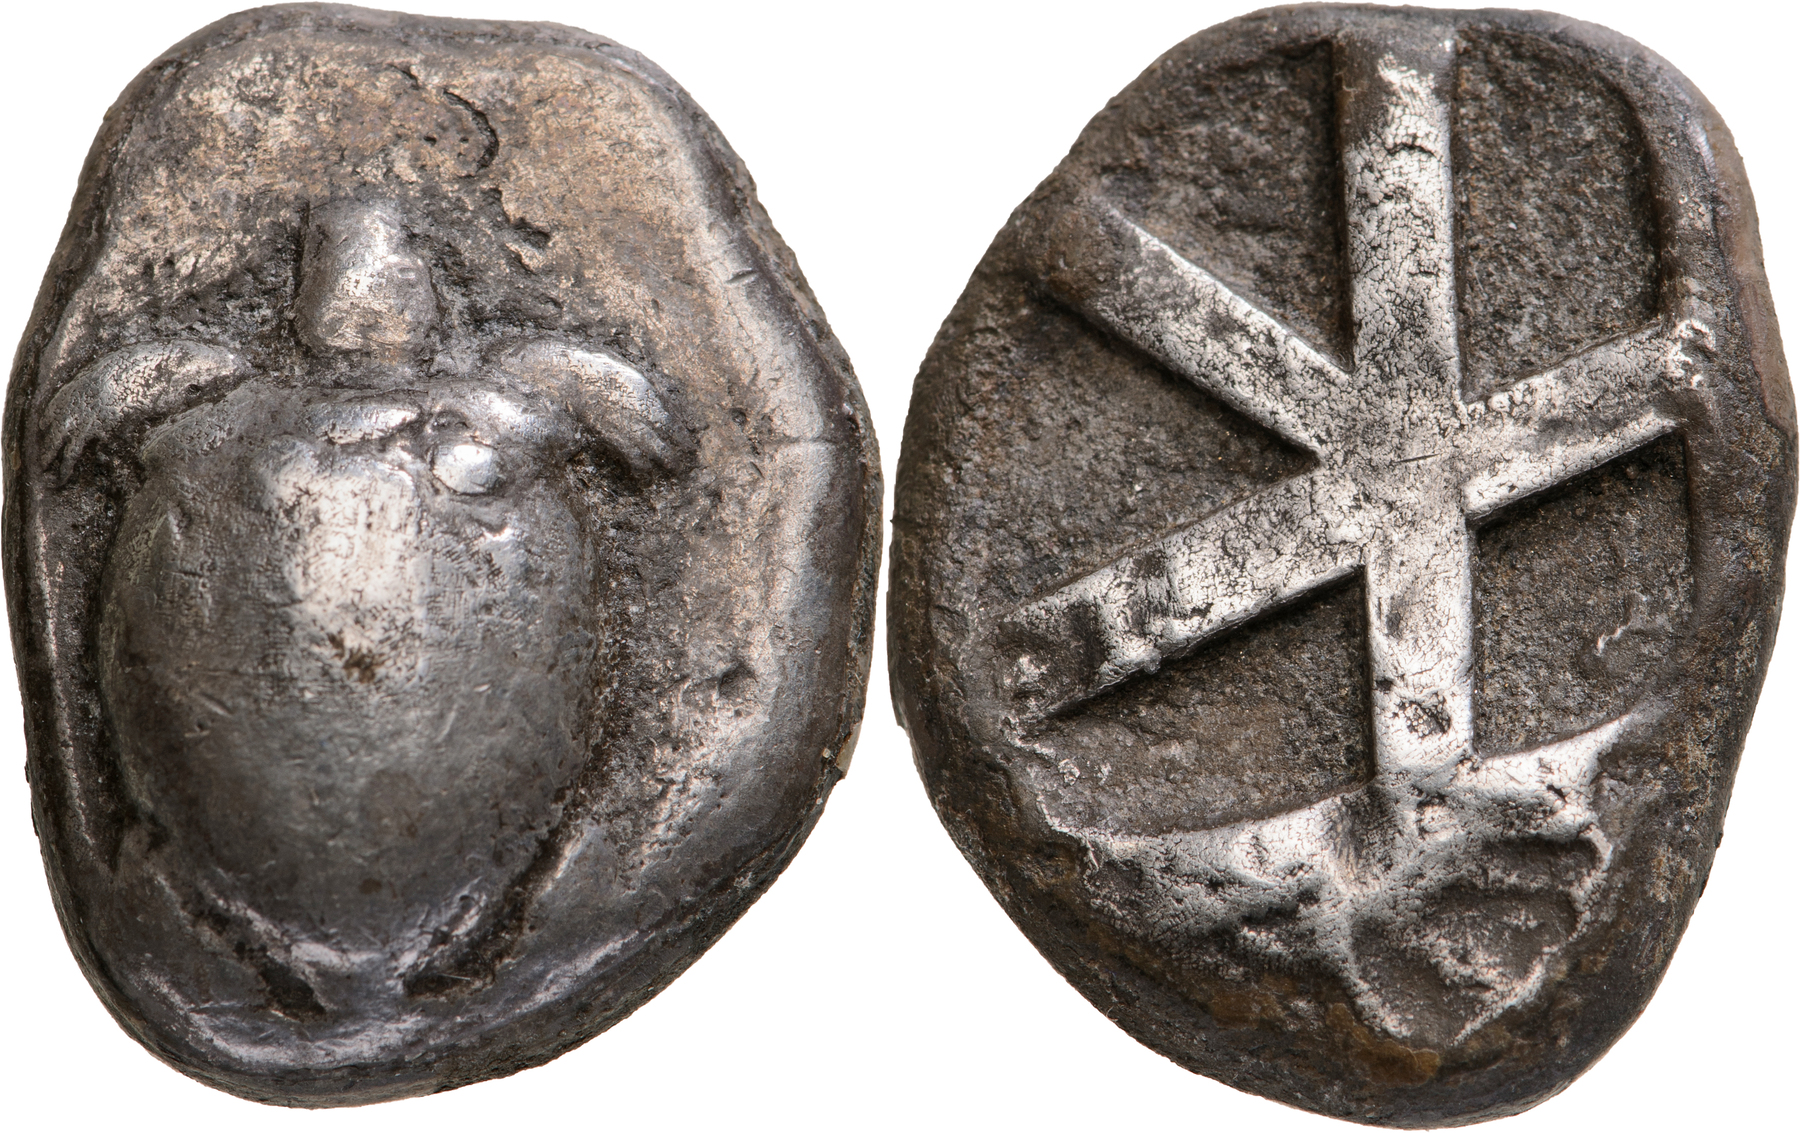 ISLANDS OFF ATTICA, Aegina. Silver Stater (12.10 g). Circa 525-480 BC.